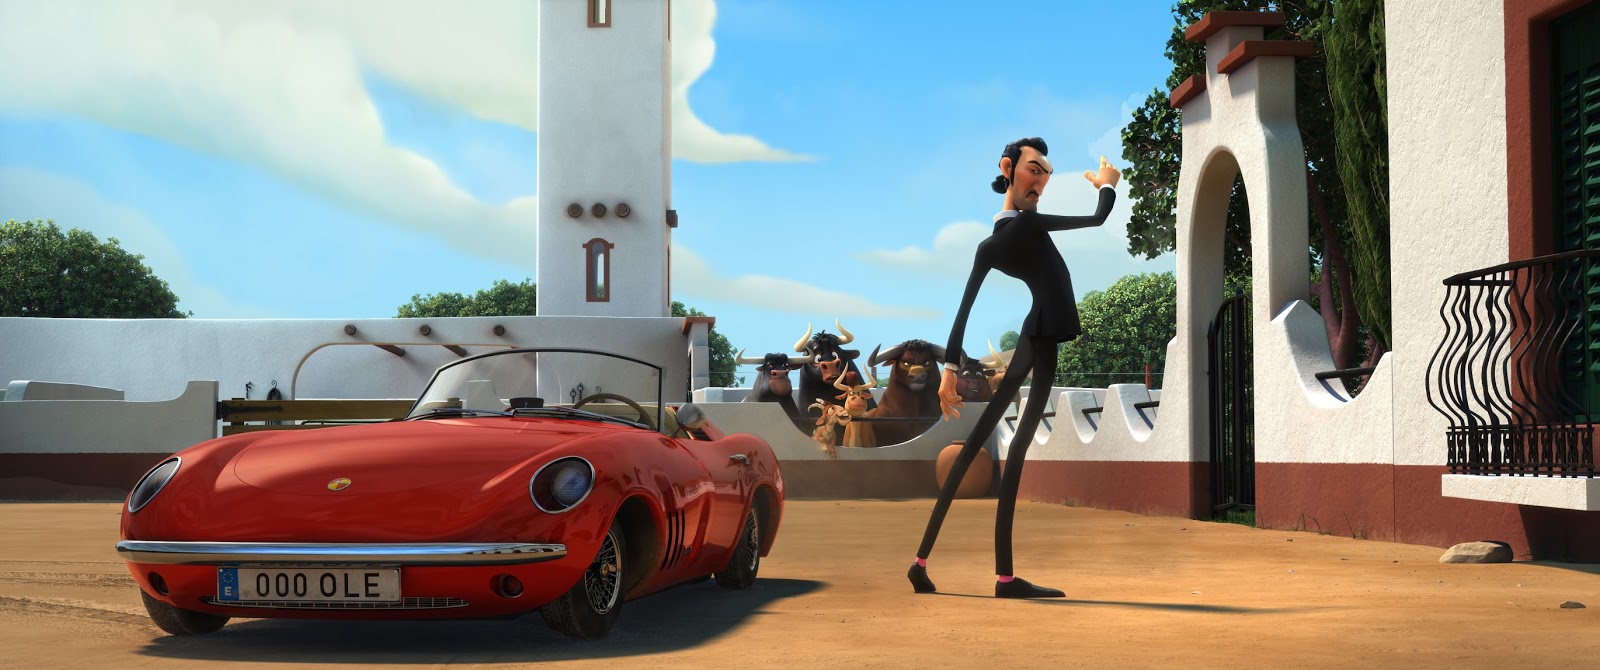 Fondo de pantalla, imagen: Rayo McQueen (Cars); número 3275, perteneciente  a la categoría de Fondos de Cars (Pixar-Disne…